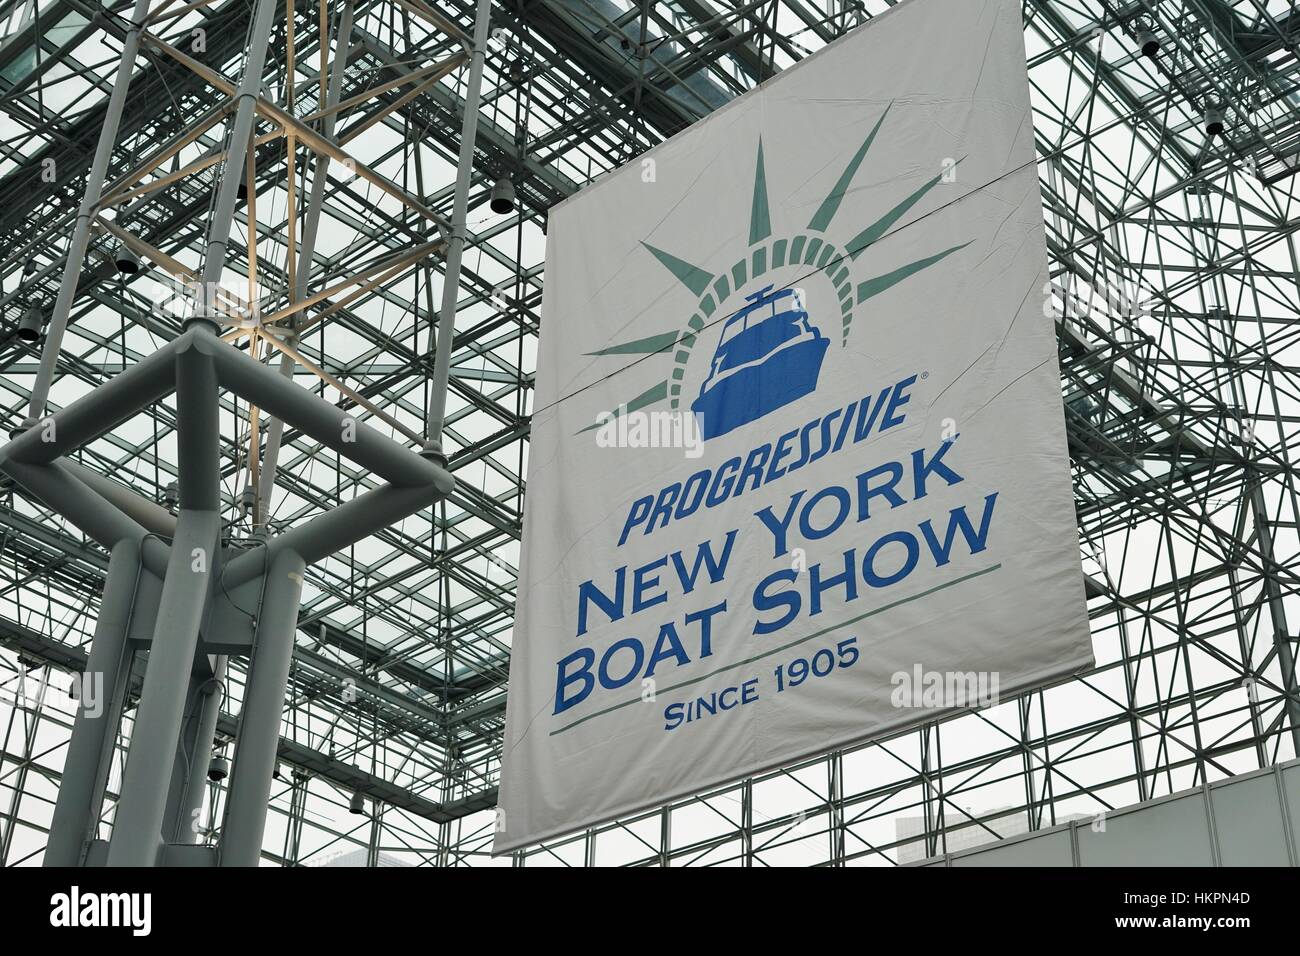 Le Parti progressiste New York Boat Show a eu lieu au Jacob K. Javits Convention Center de New York du 25 au 29 janvier 2017 Banque D'Images